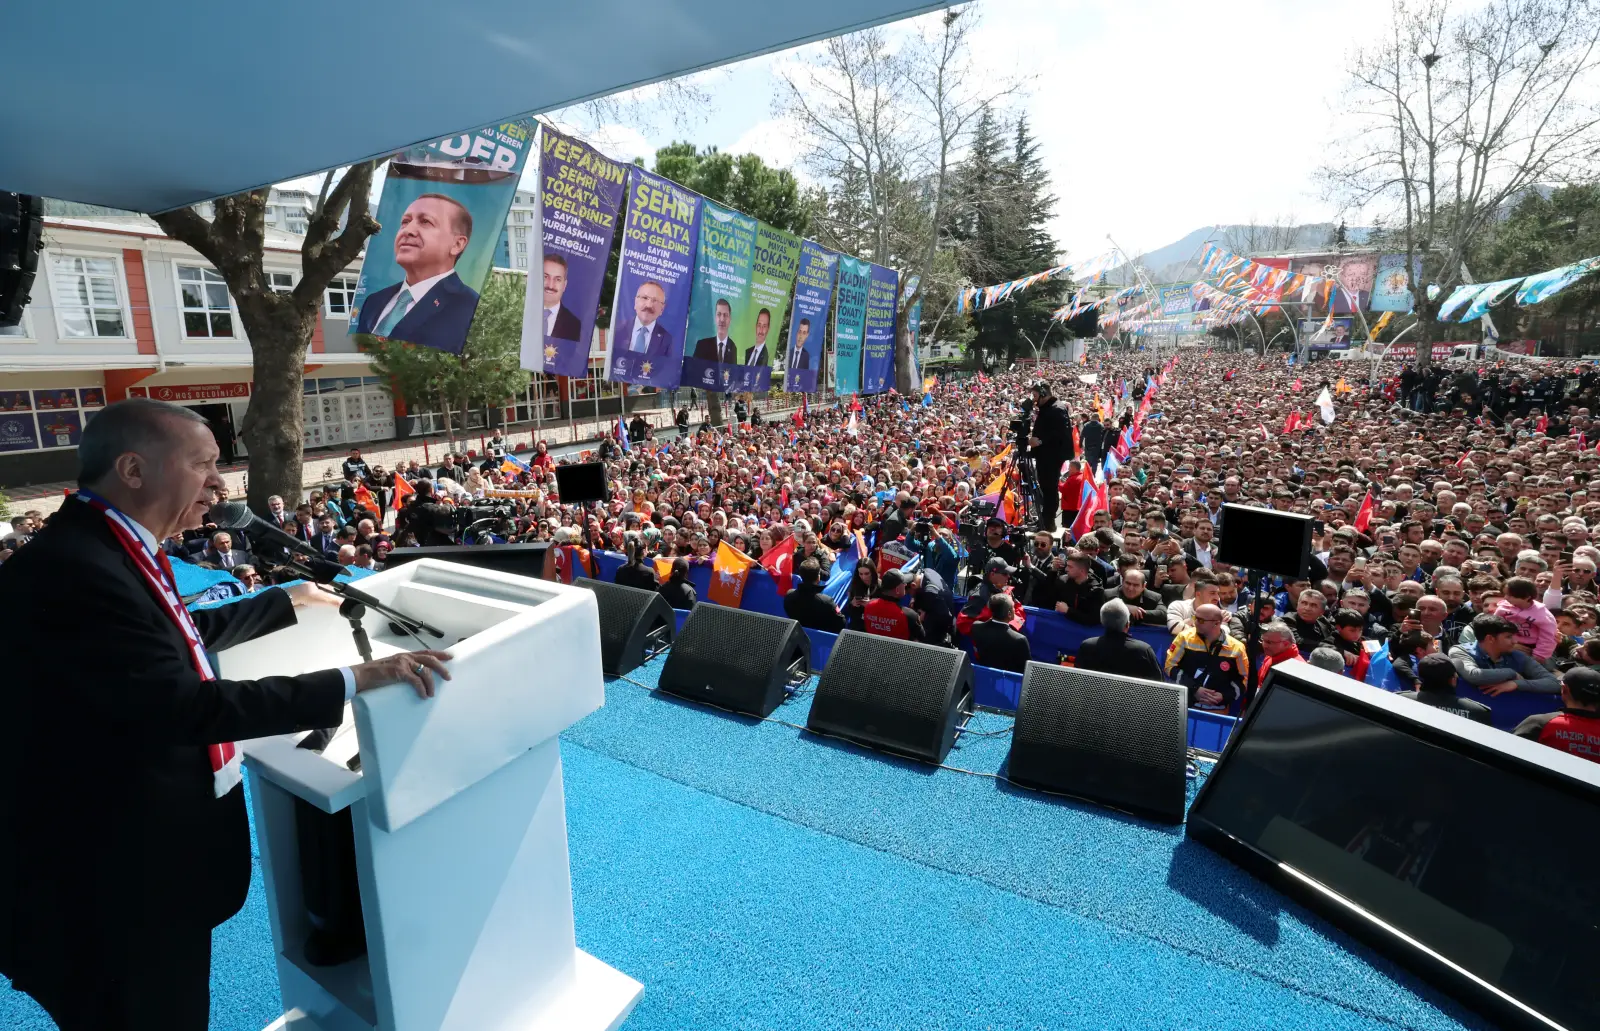 Erdoğan: “Tokat bizi yalnız bırakmadı”